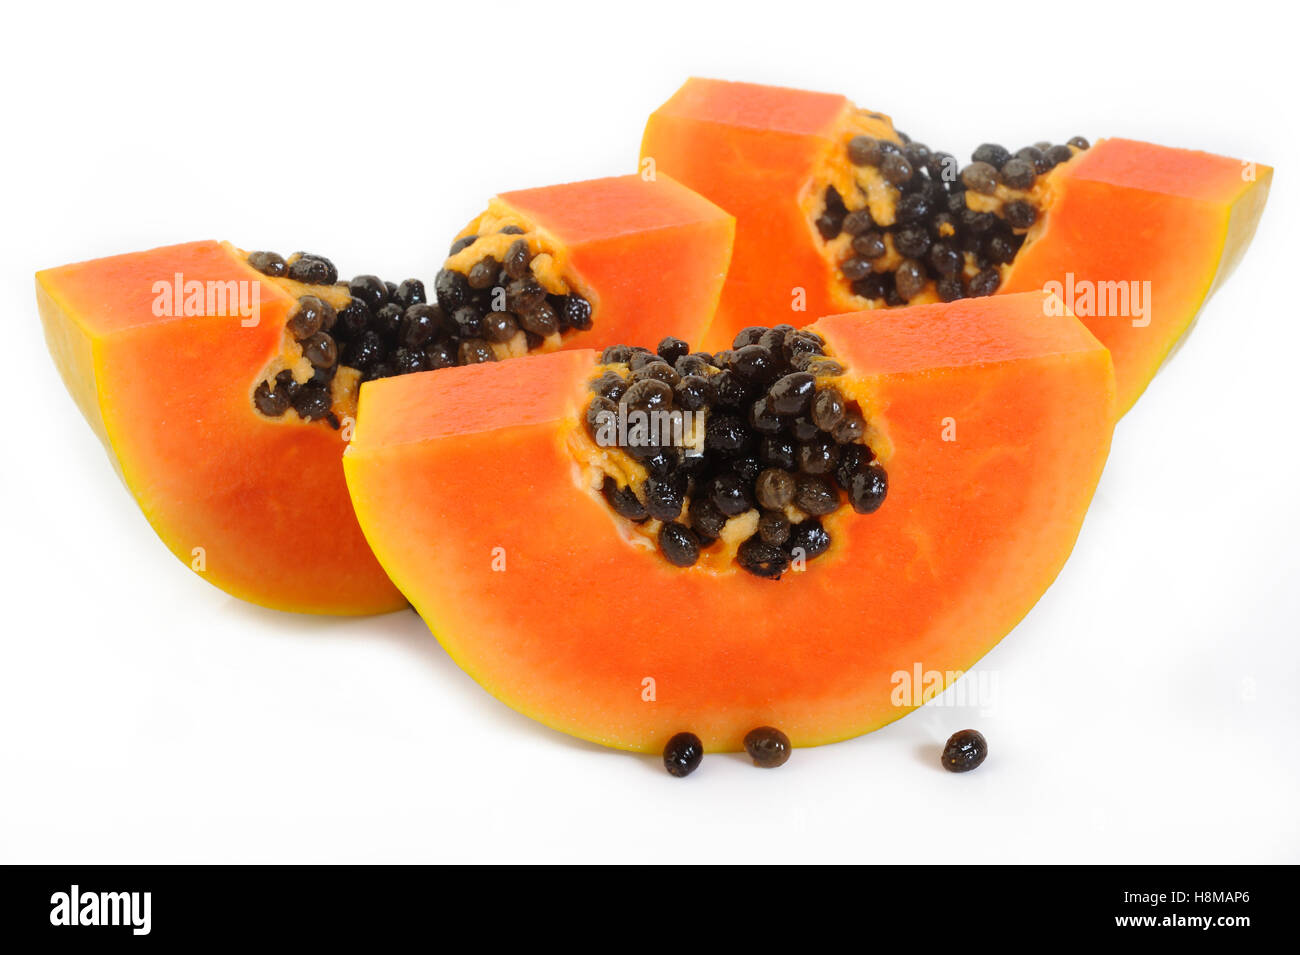 sliced papaya on white background Stock Photo